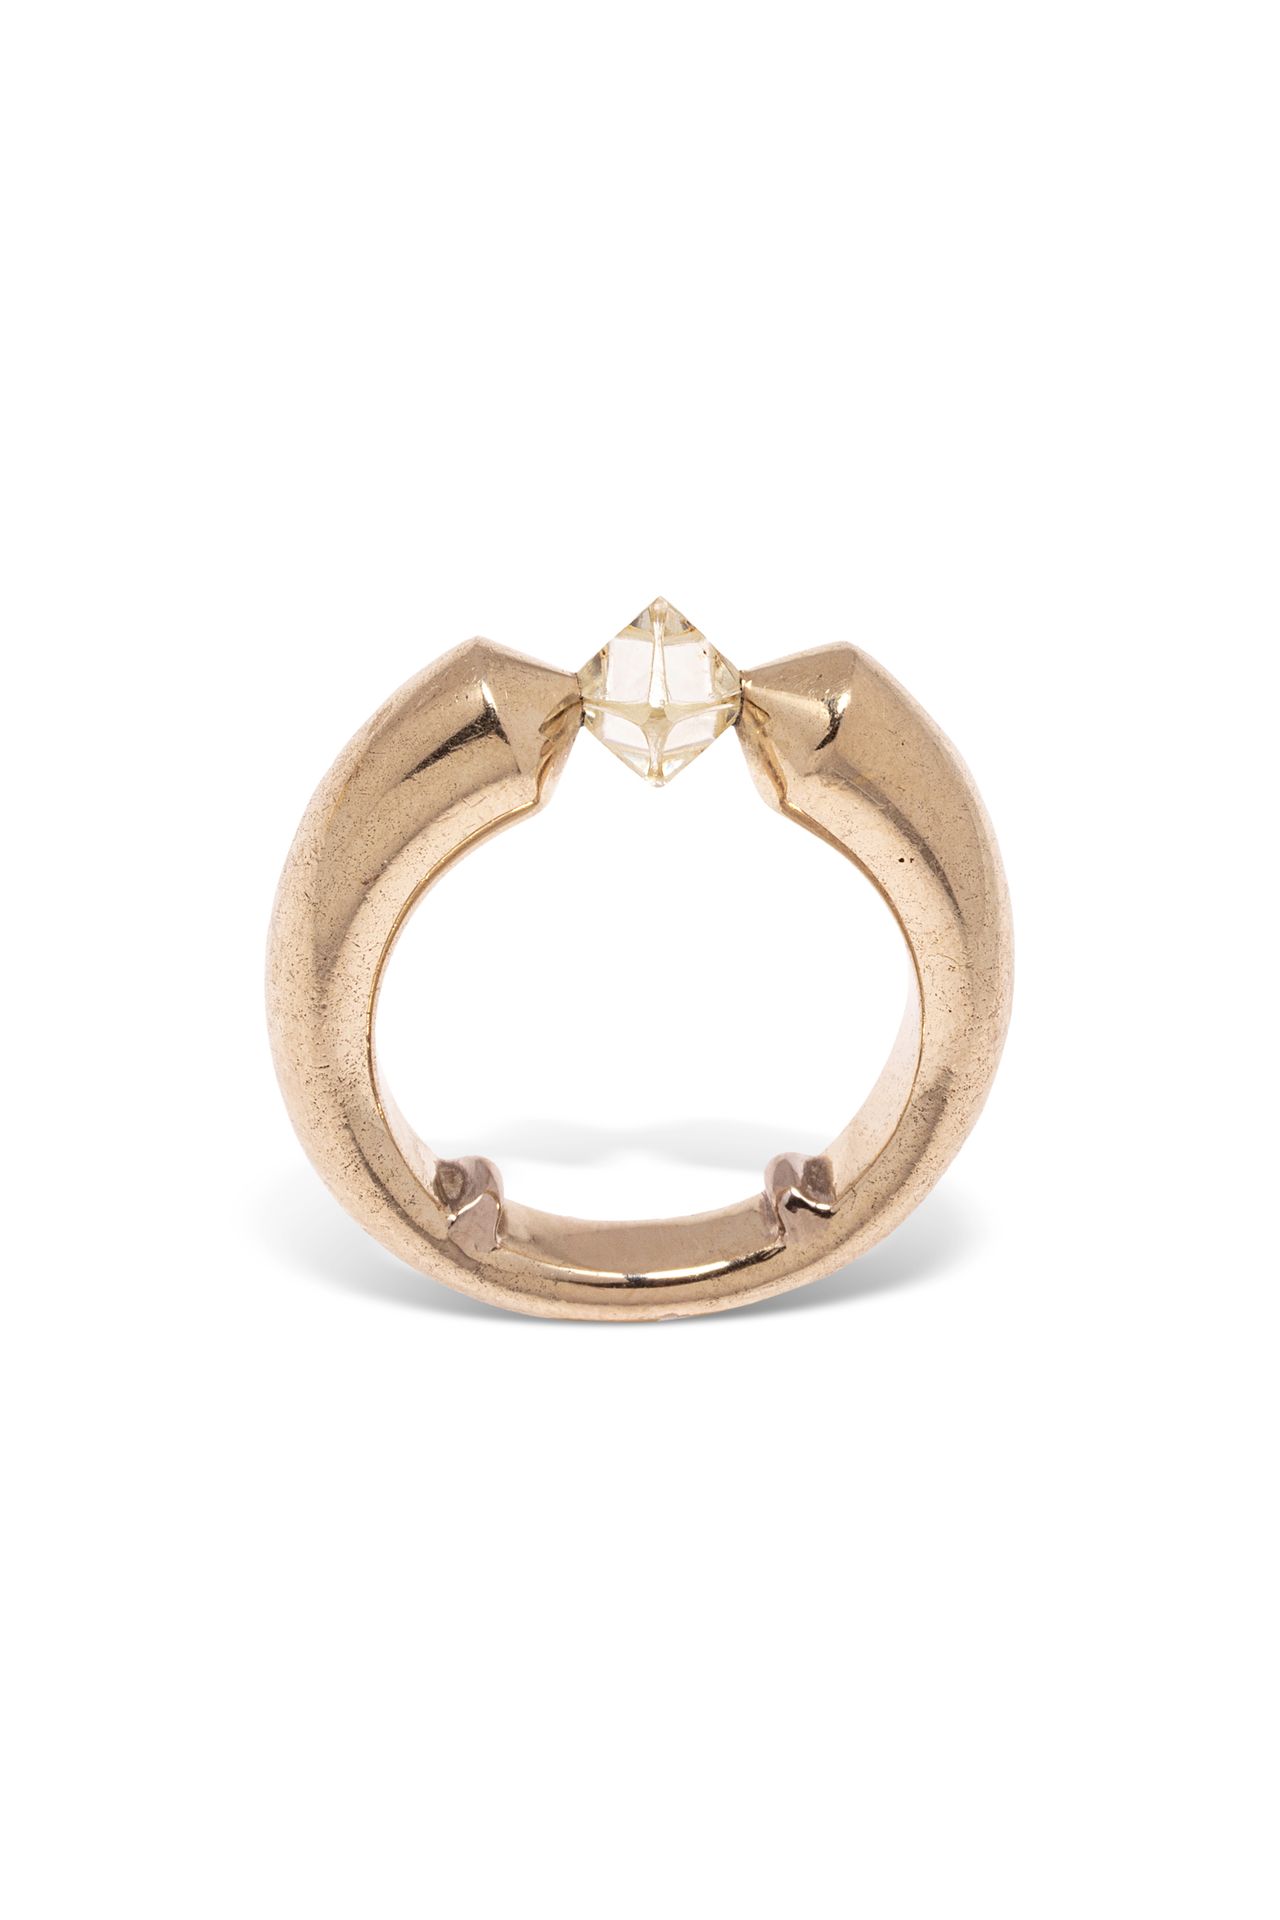 Null Ring aus 18 K (750) Gelbgold, besetzt mit einem oktaedrischen Rohdiamanten.&hellip;